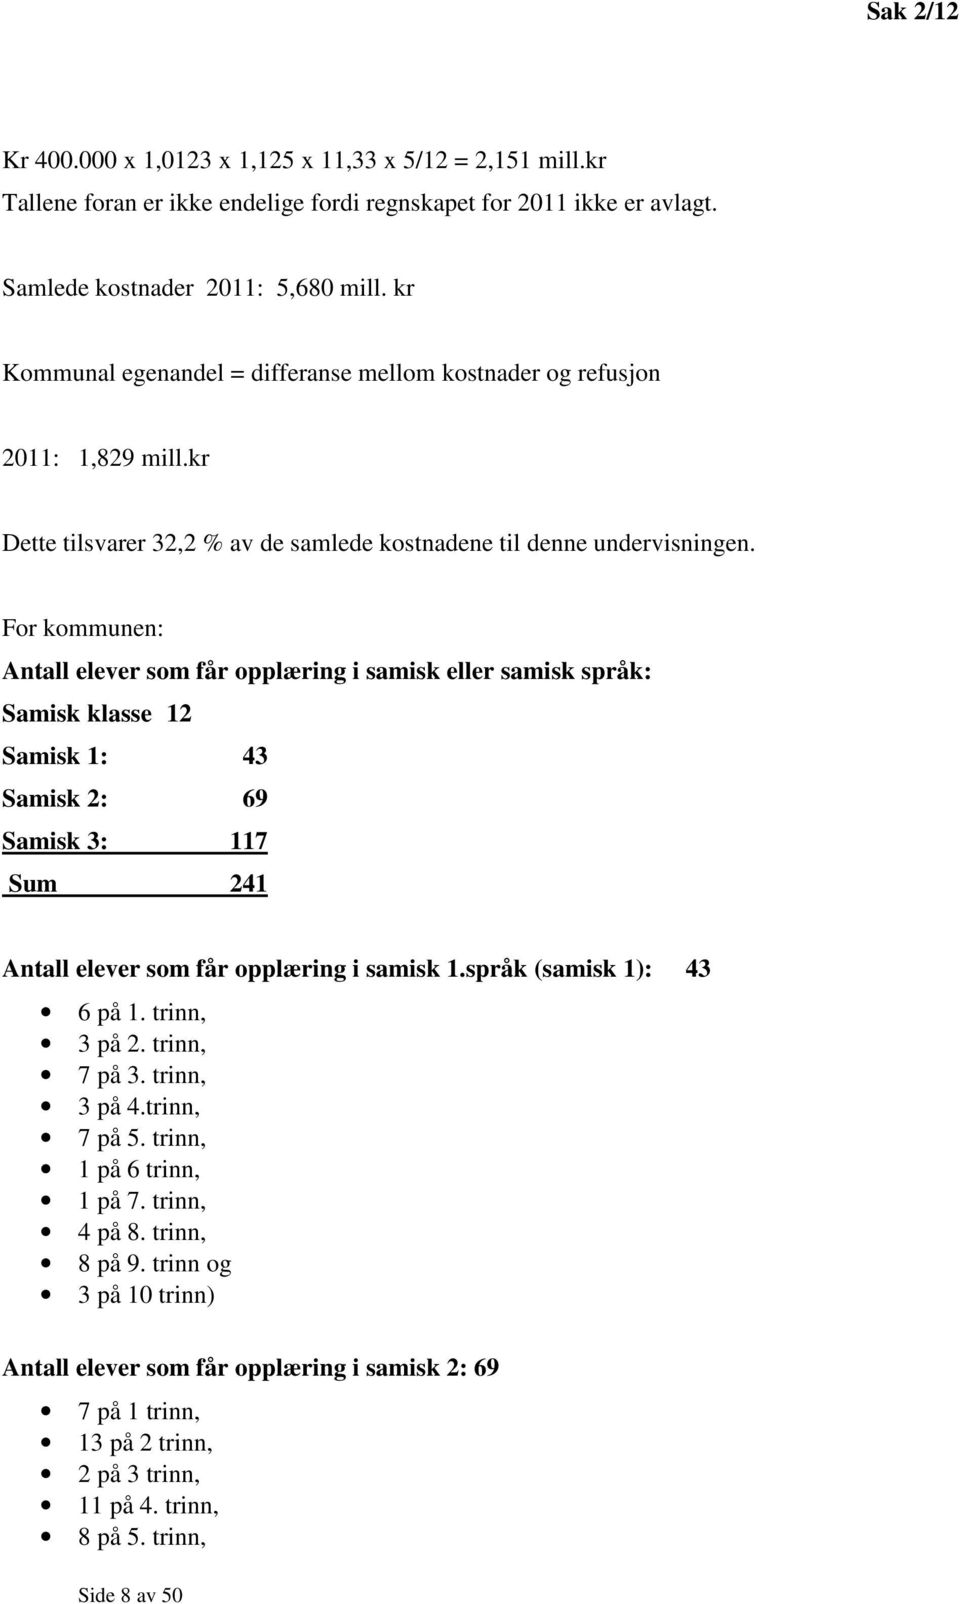 For kommunen: Antall elever som får opplæring i samisk eller samisk språk: Samisk klasse 12 Samisk 1: 43 Samisk 2: 69 Samisk 3: 117 Sum 241 Antall elever som får opplæring i samisk 1.